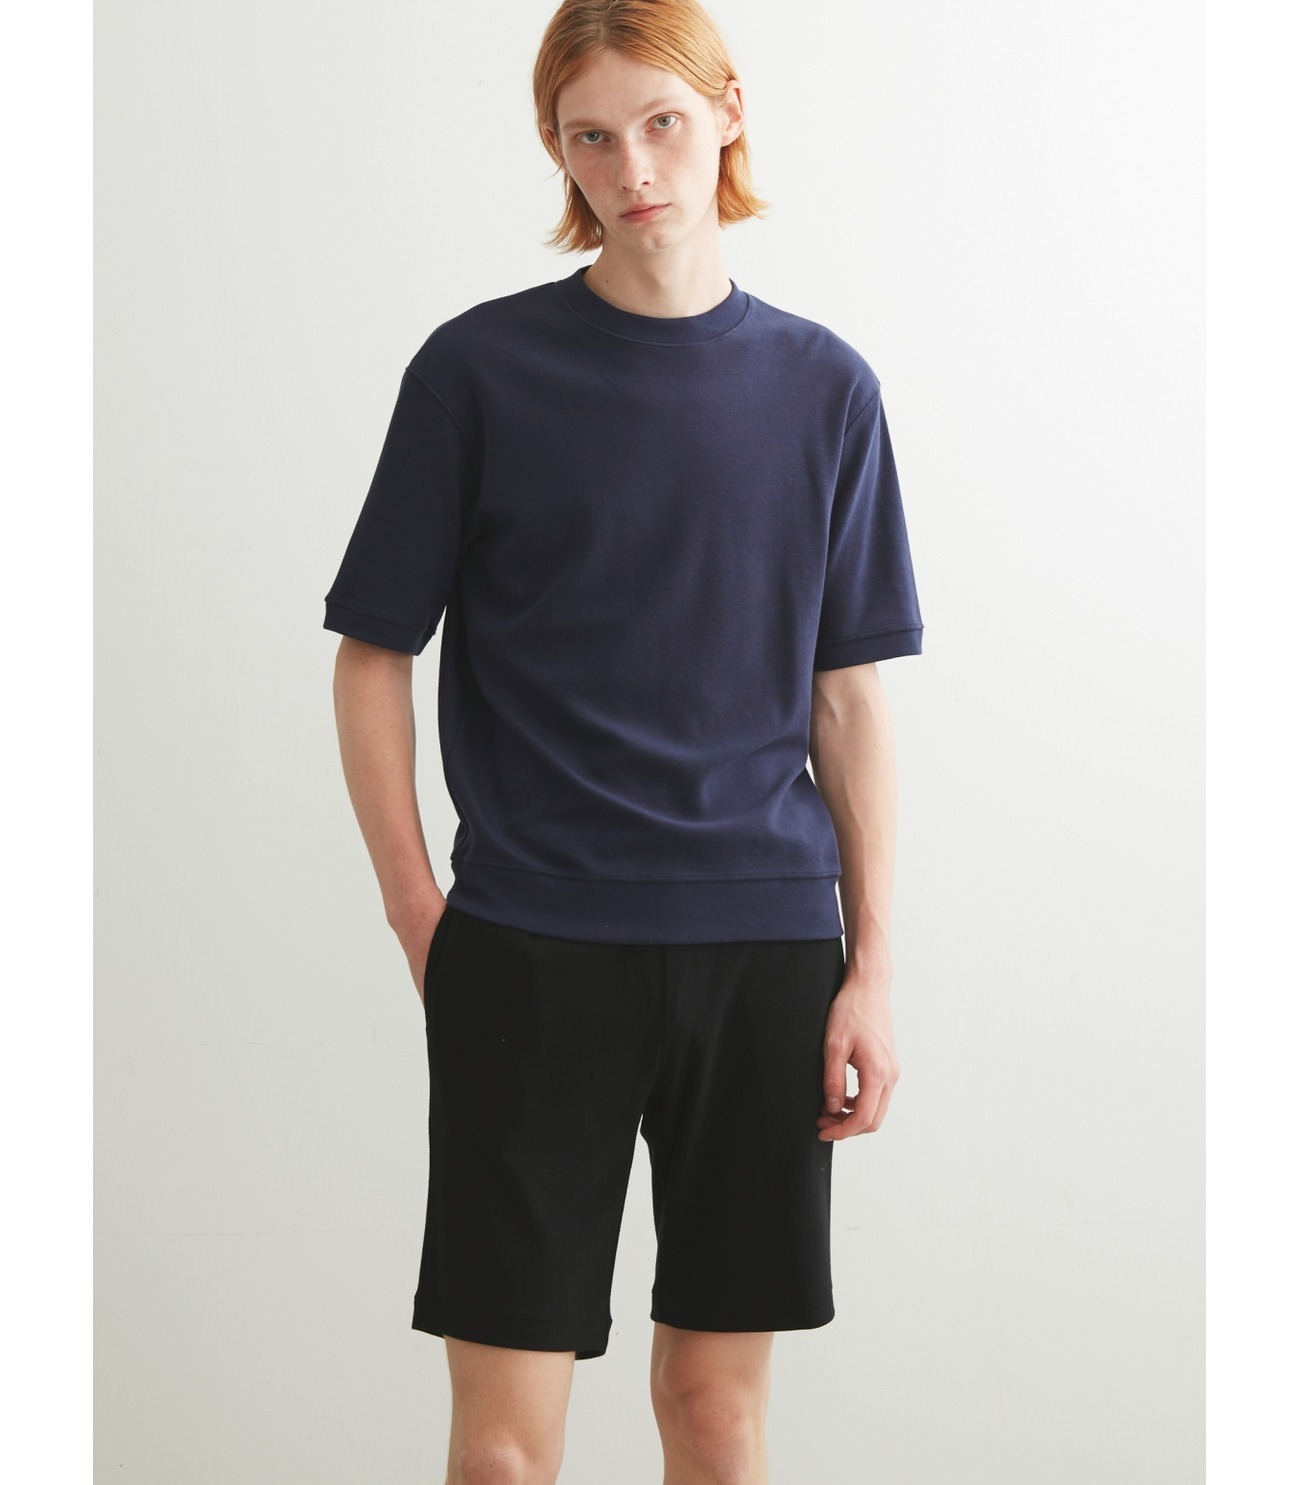 Men's compact pile shorts 詳細画像 black 7